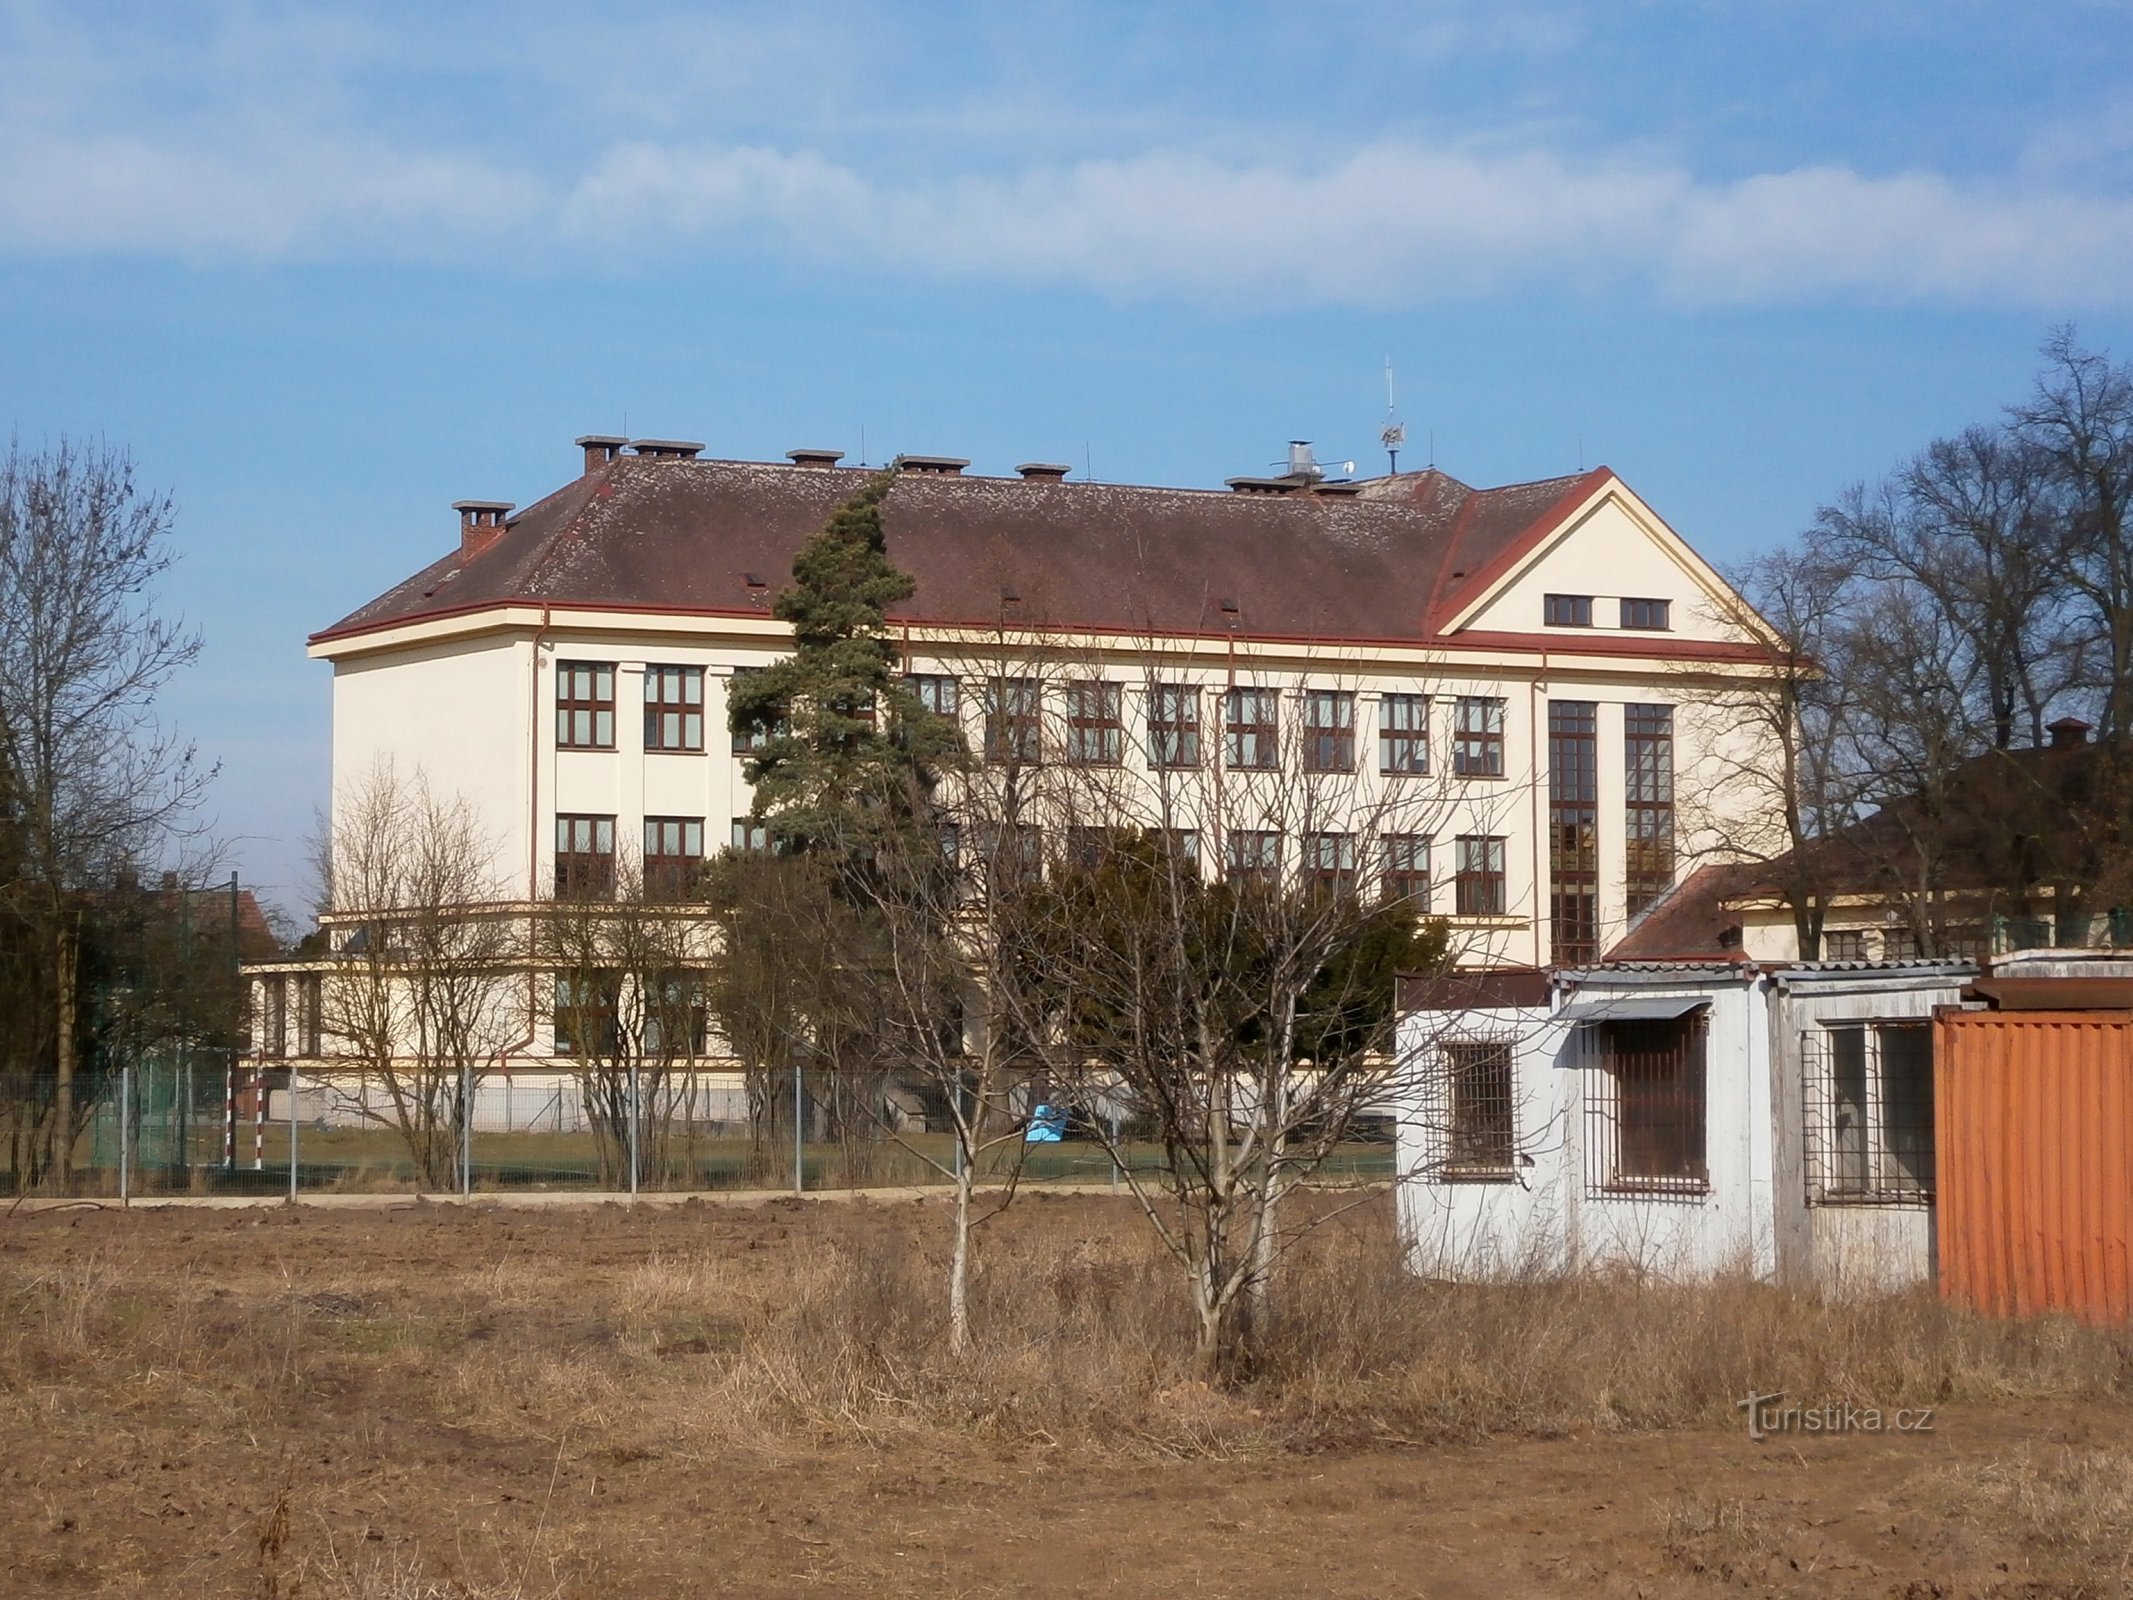 Scuola elementare Masaryk a Plotiště nad Labem (Hradec Králové, 9.3.2015/XNUMX/XNUMX)